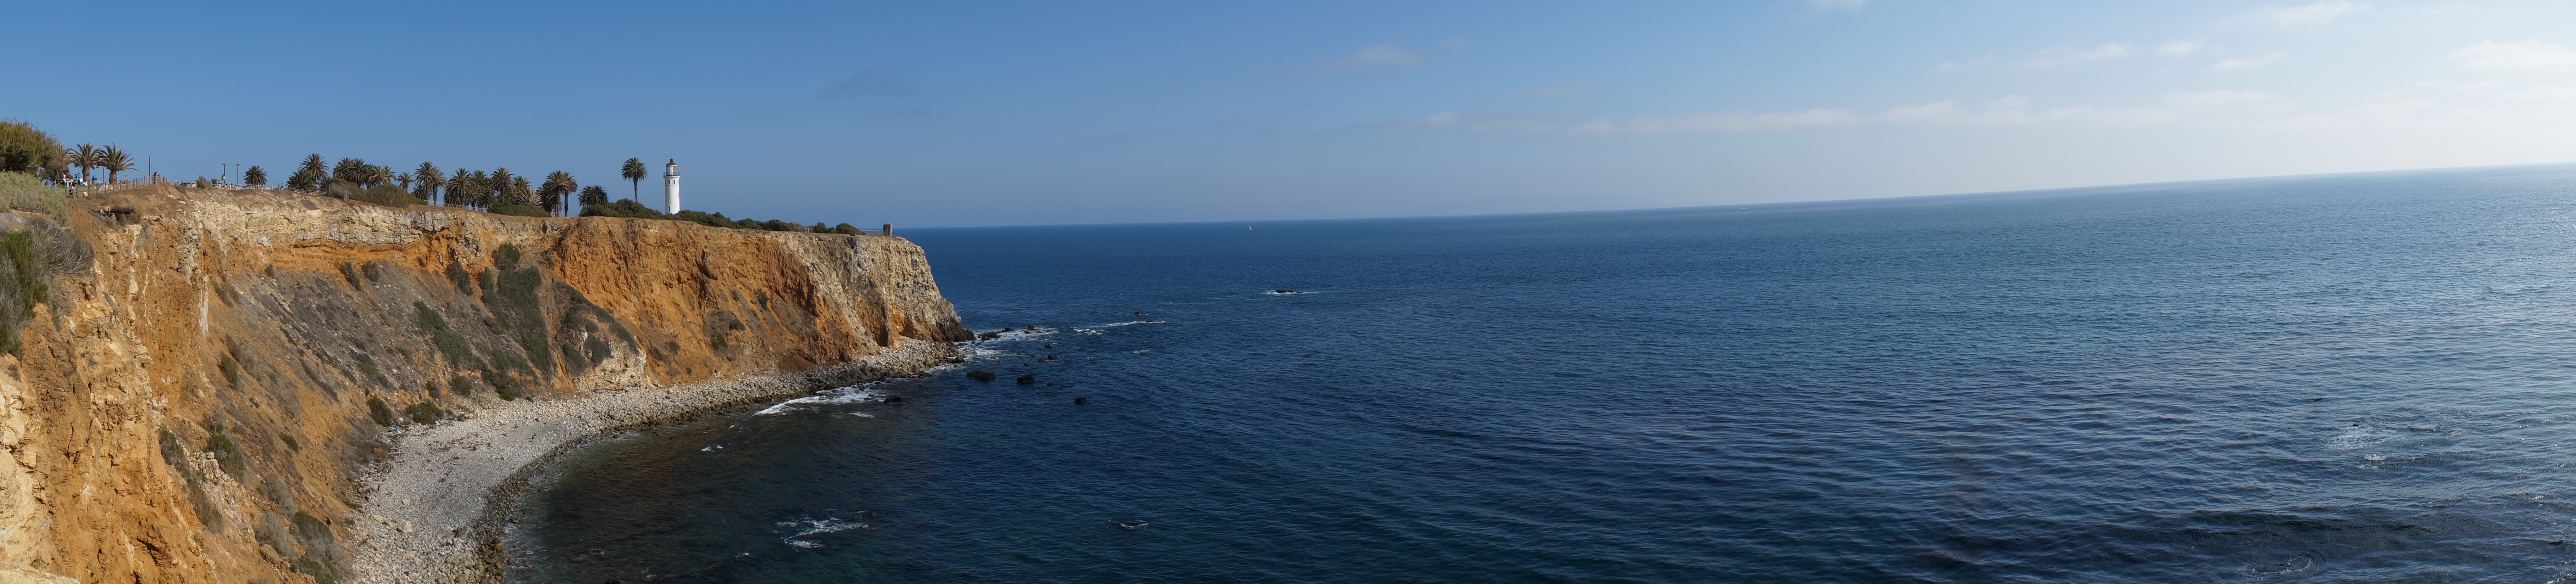 Seashore panorama photo